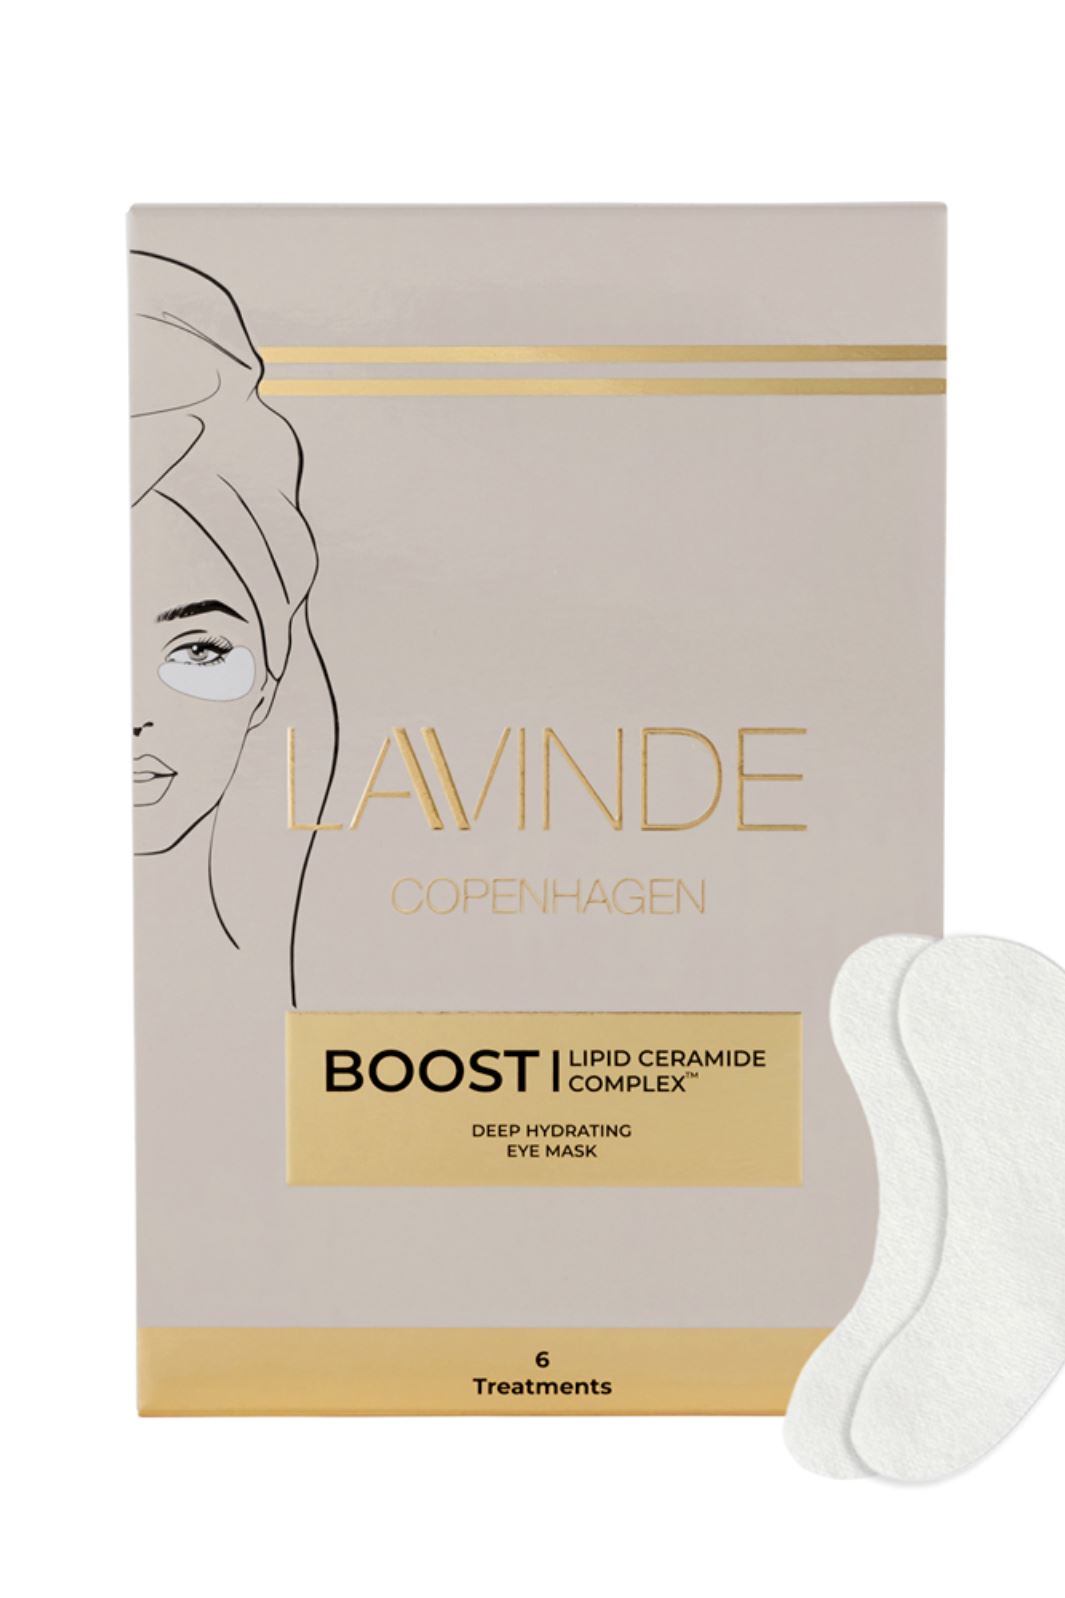 Lavinde Copenhagen - Boost - Deep Hydrating Eye Mask (6 Treatments) - 6 stk Øjenpleje 